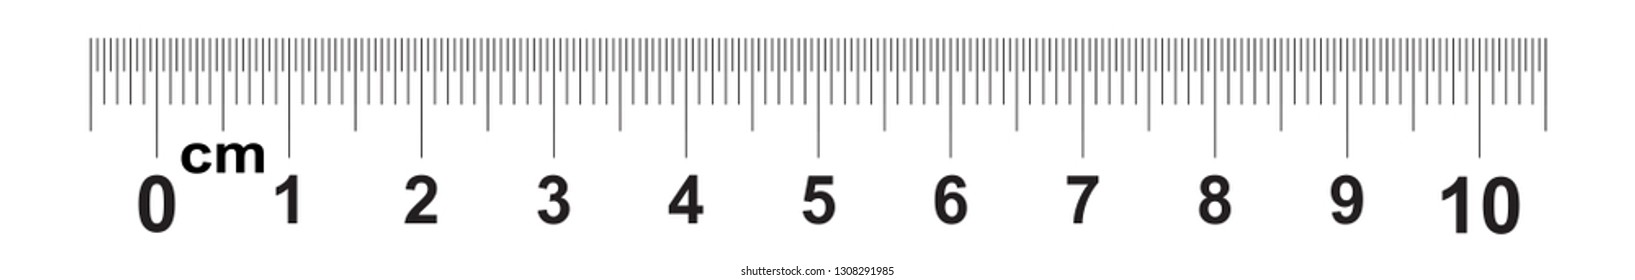 Ruler 10 centimeter. Ruler 100 mm. Value of division 0.5 mm. Precise length measurement device. Calibration grid svg